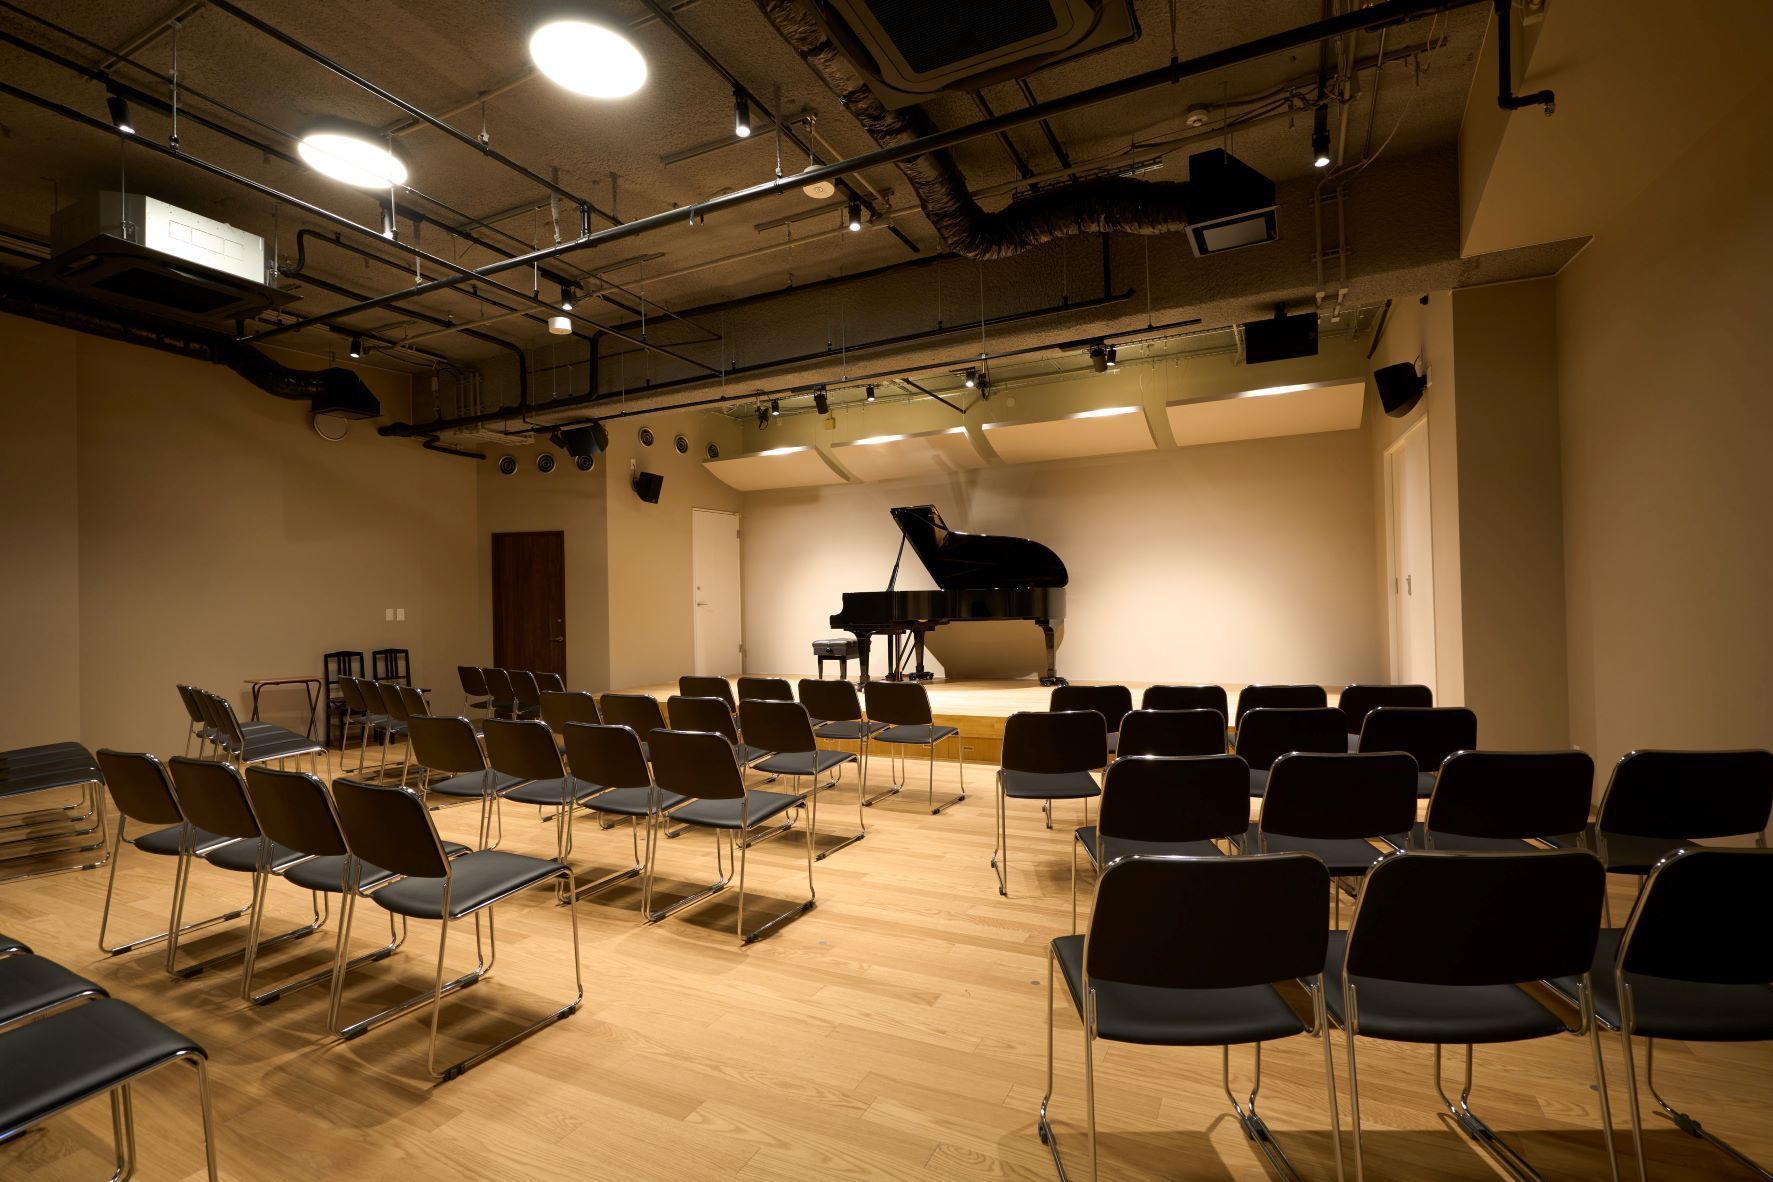 クラシック音楽に特化した24時間無人音楽スタジオ
「ピアノスタジオフィックス立川」6月9日プレオープン